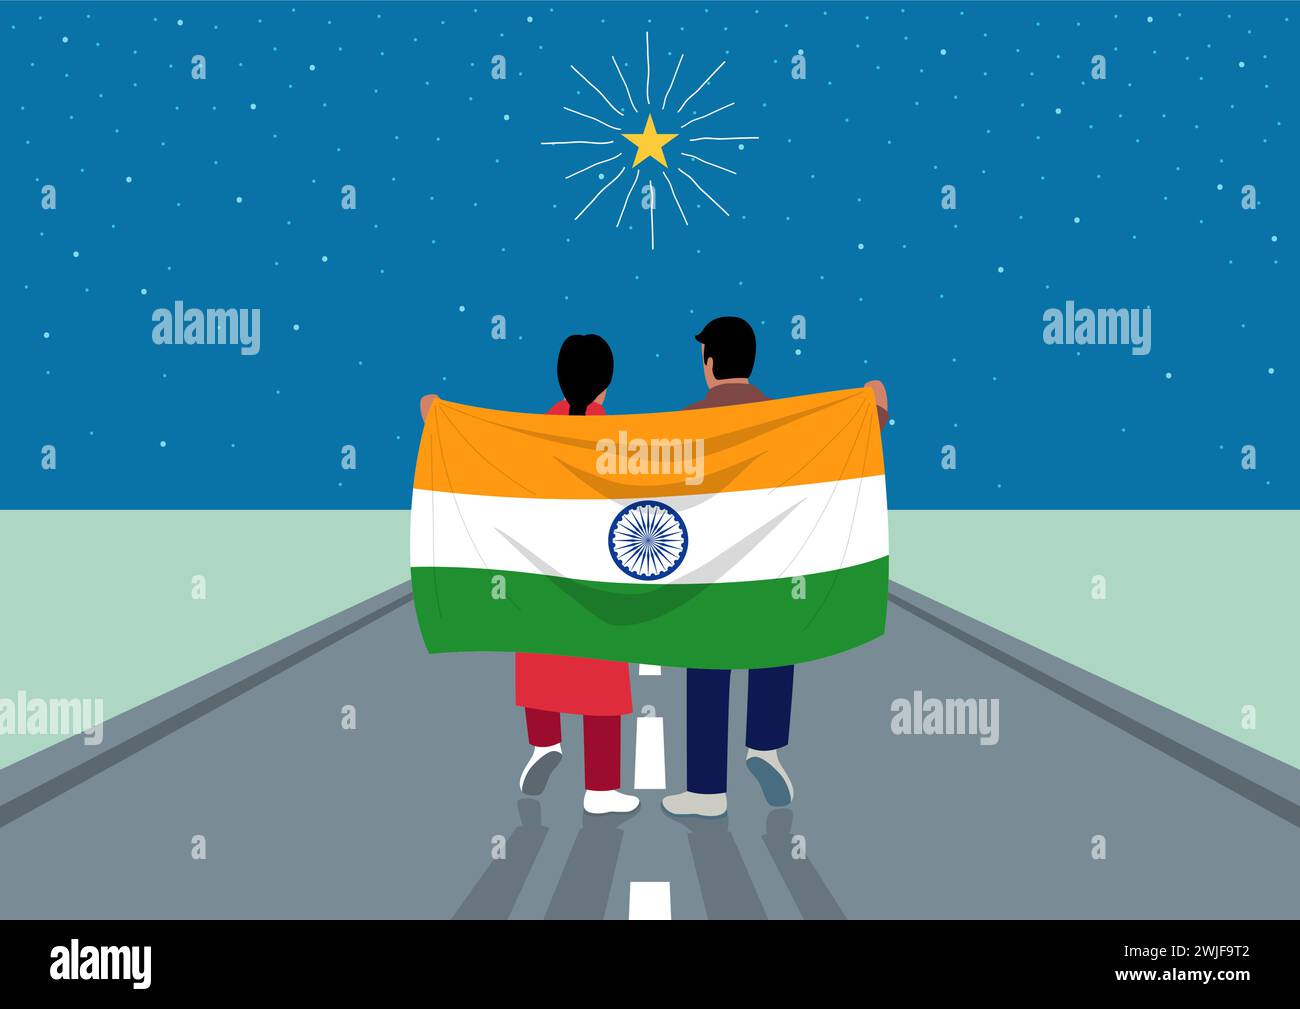 Garçon et fille tenant le drapeau de l'Inde tout en marchant sur la route pour atteindre les étoiles, métaphore pour accueillir un avenir meilleur, optimisme et ambition Illustration de Vecteur